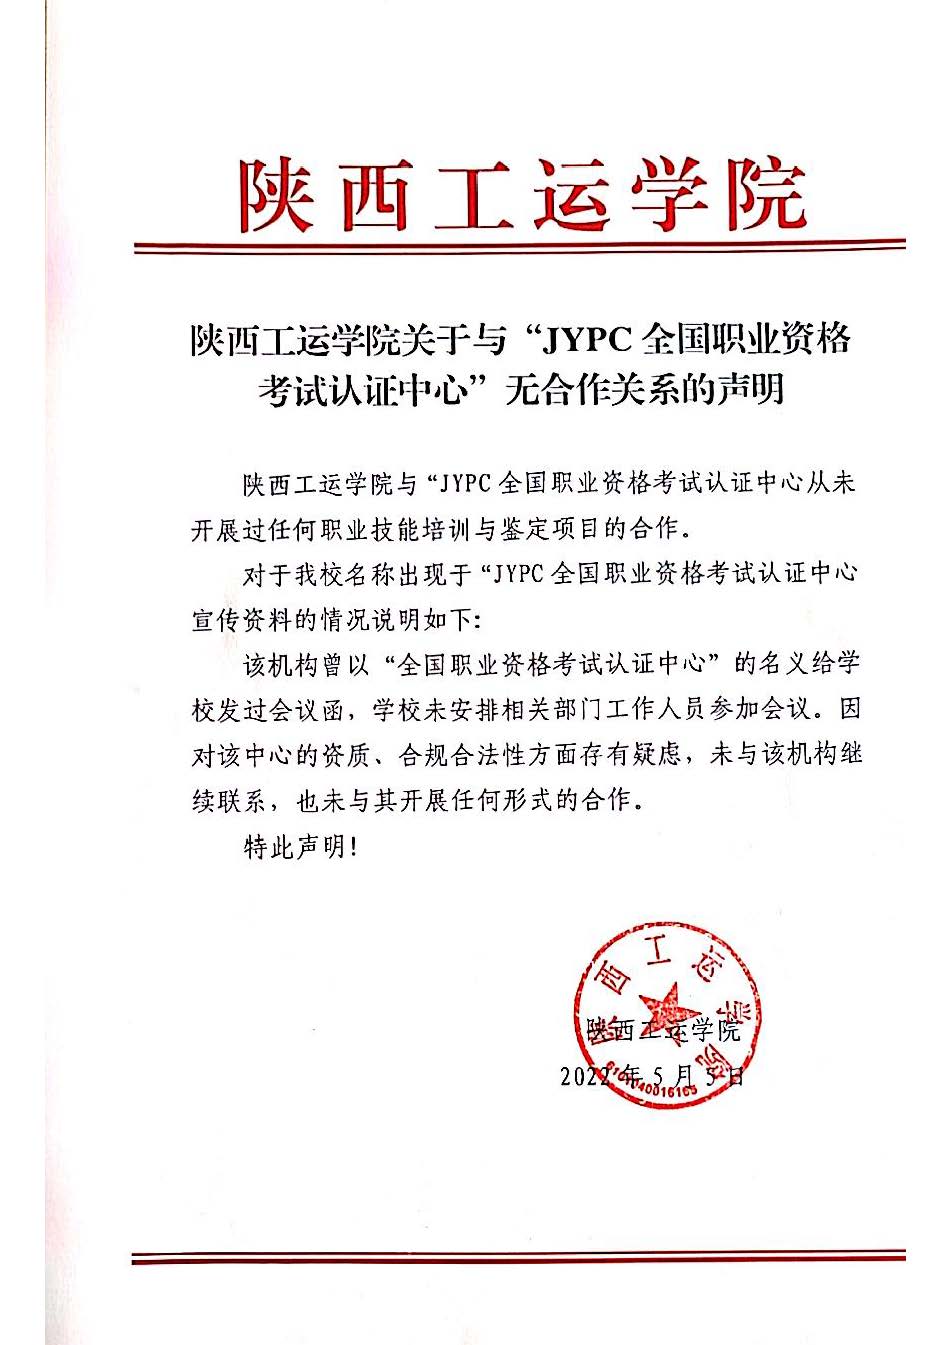 中国人事考试网开通山寨证书治理专栏 江苏一违规机构上榜